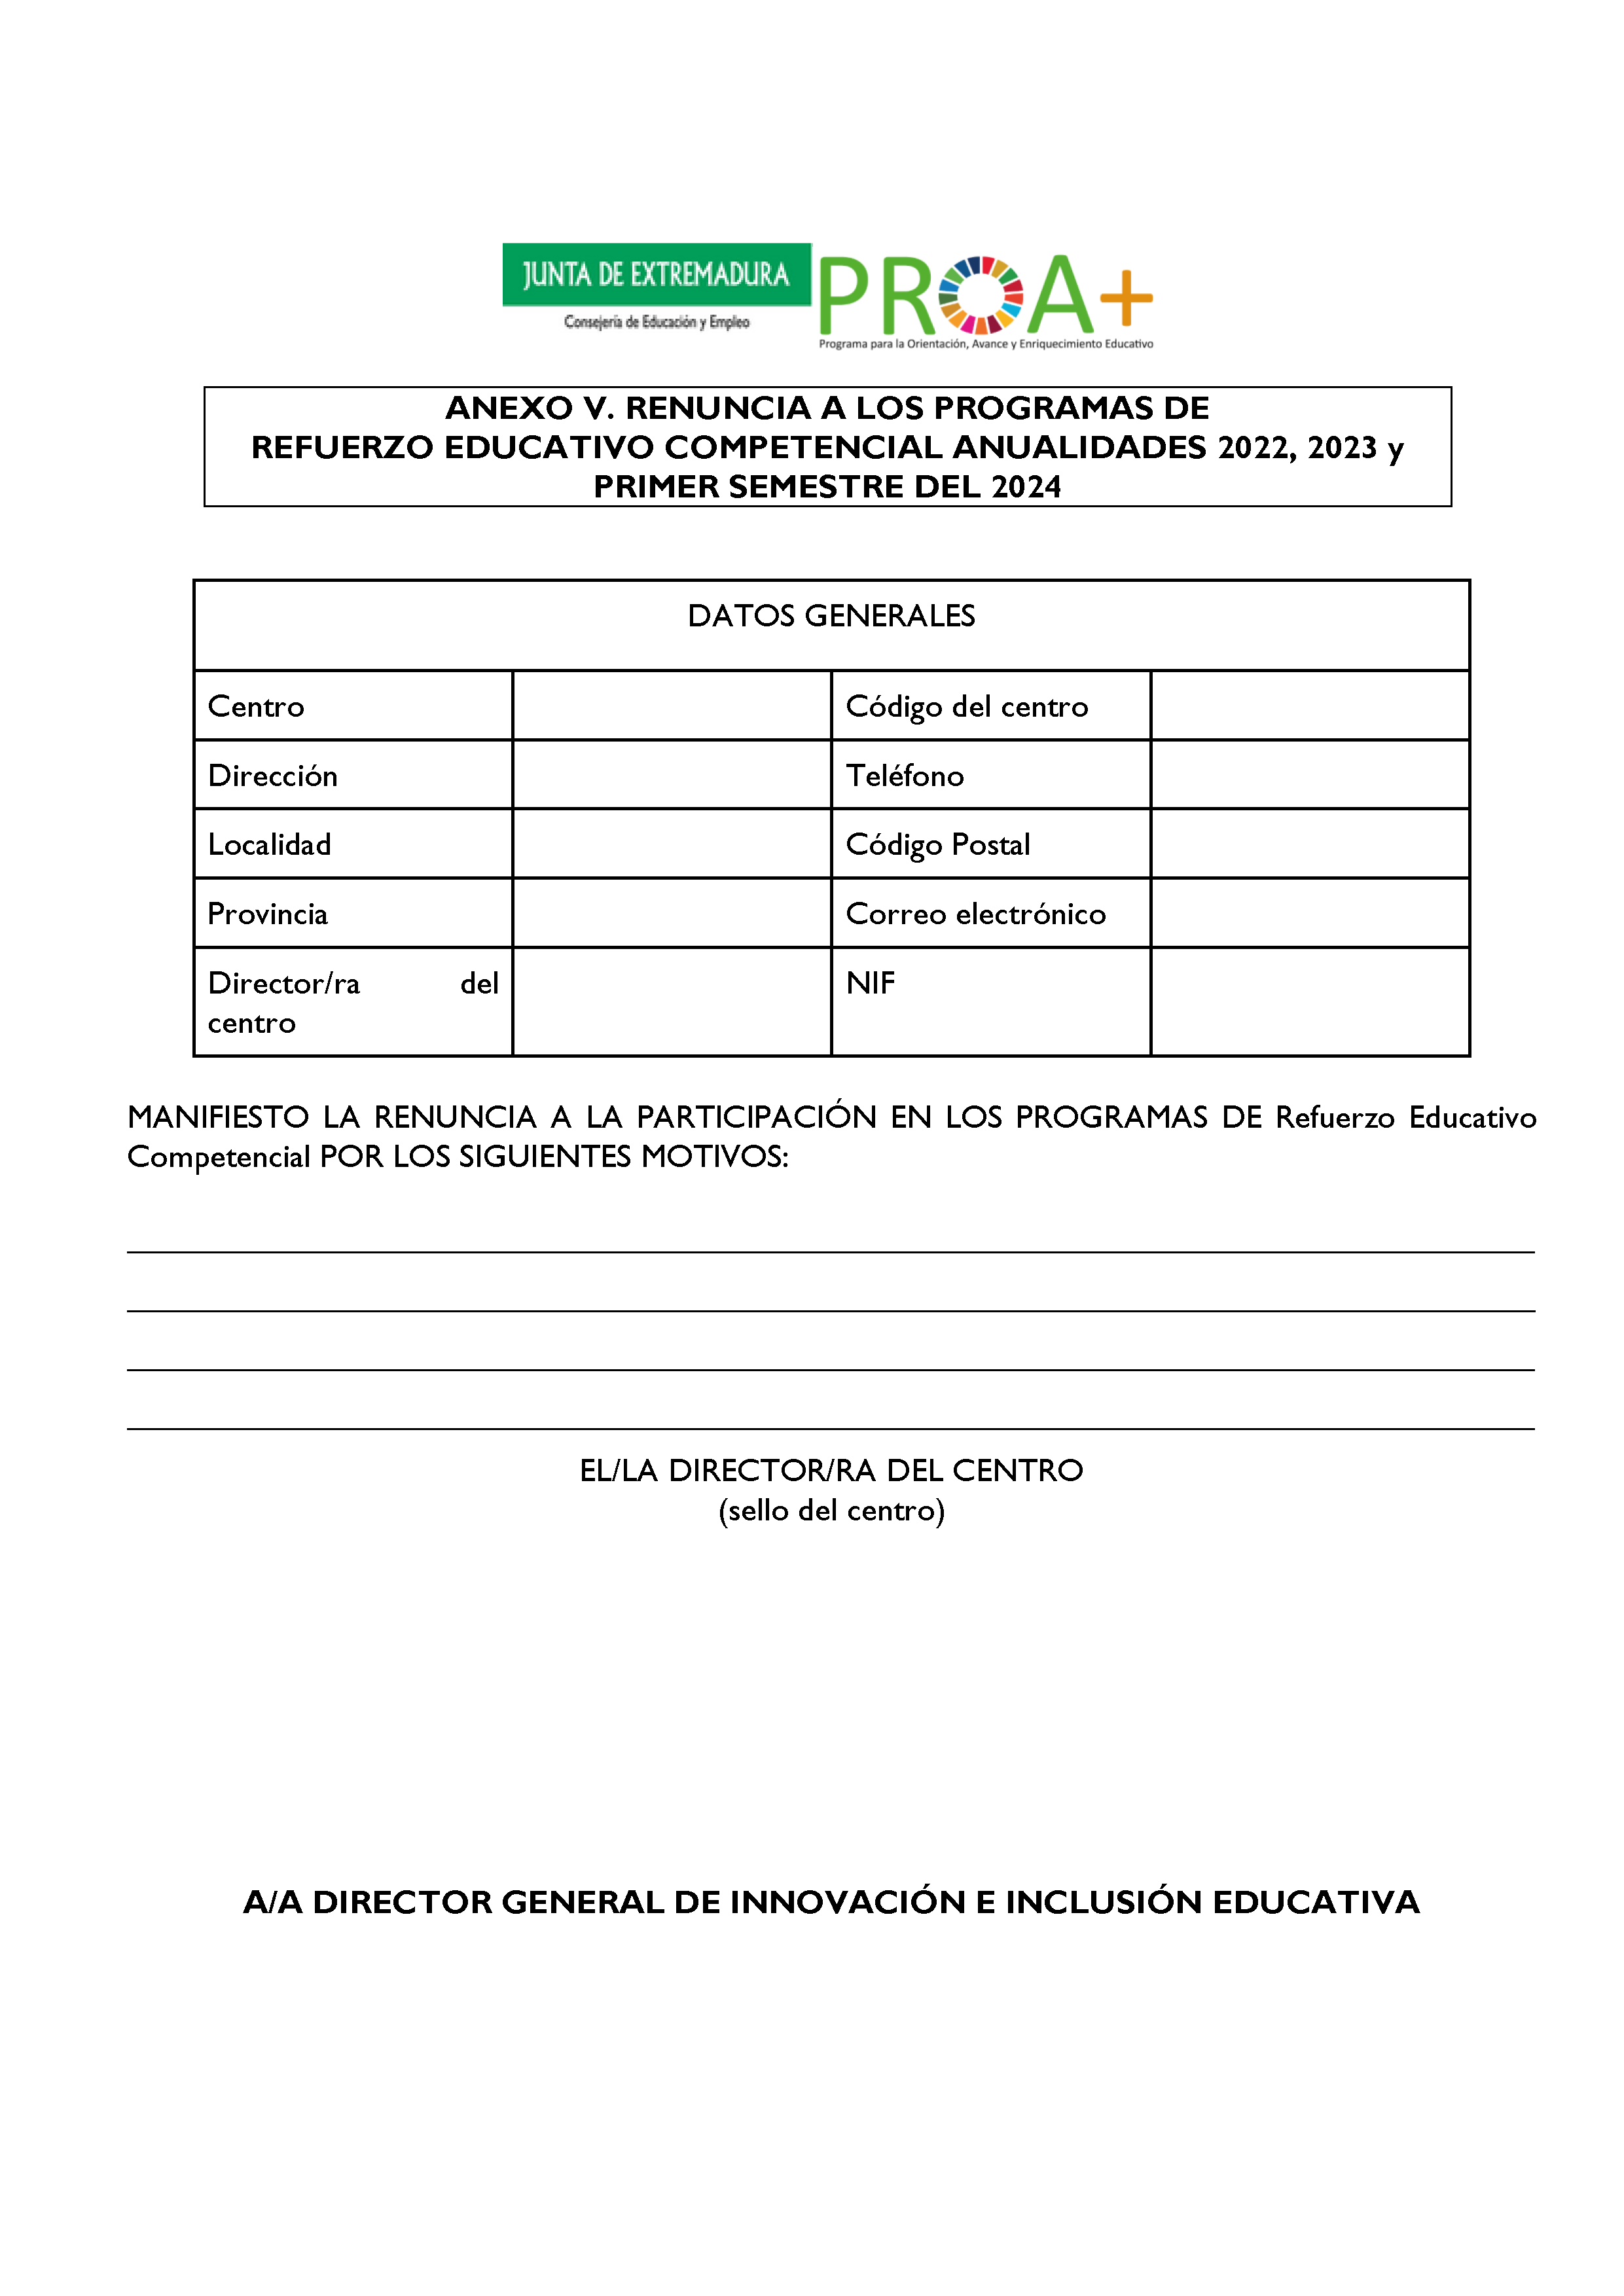 ANEXO I. ORGANIZACIÓN Y FUNCIONAMIENTO DE LOS PROGRAMAS DE REFUERZO EDUCATIVO COMPETENCIAL. Pag 8